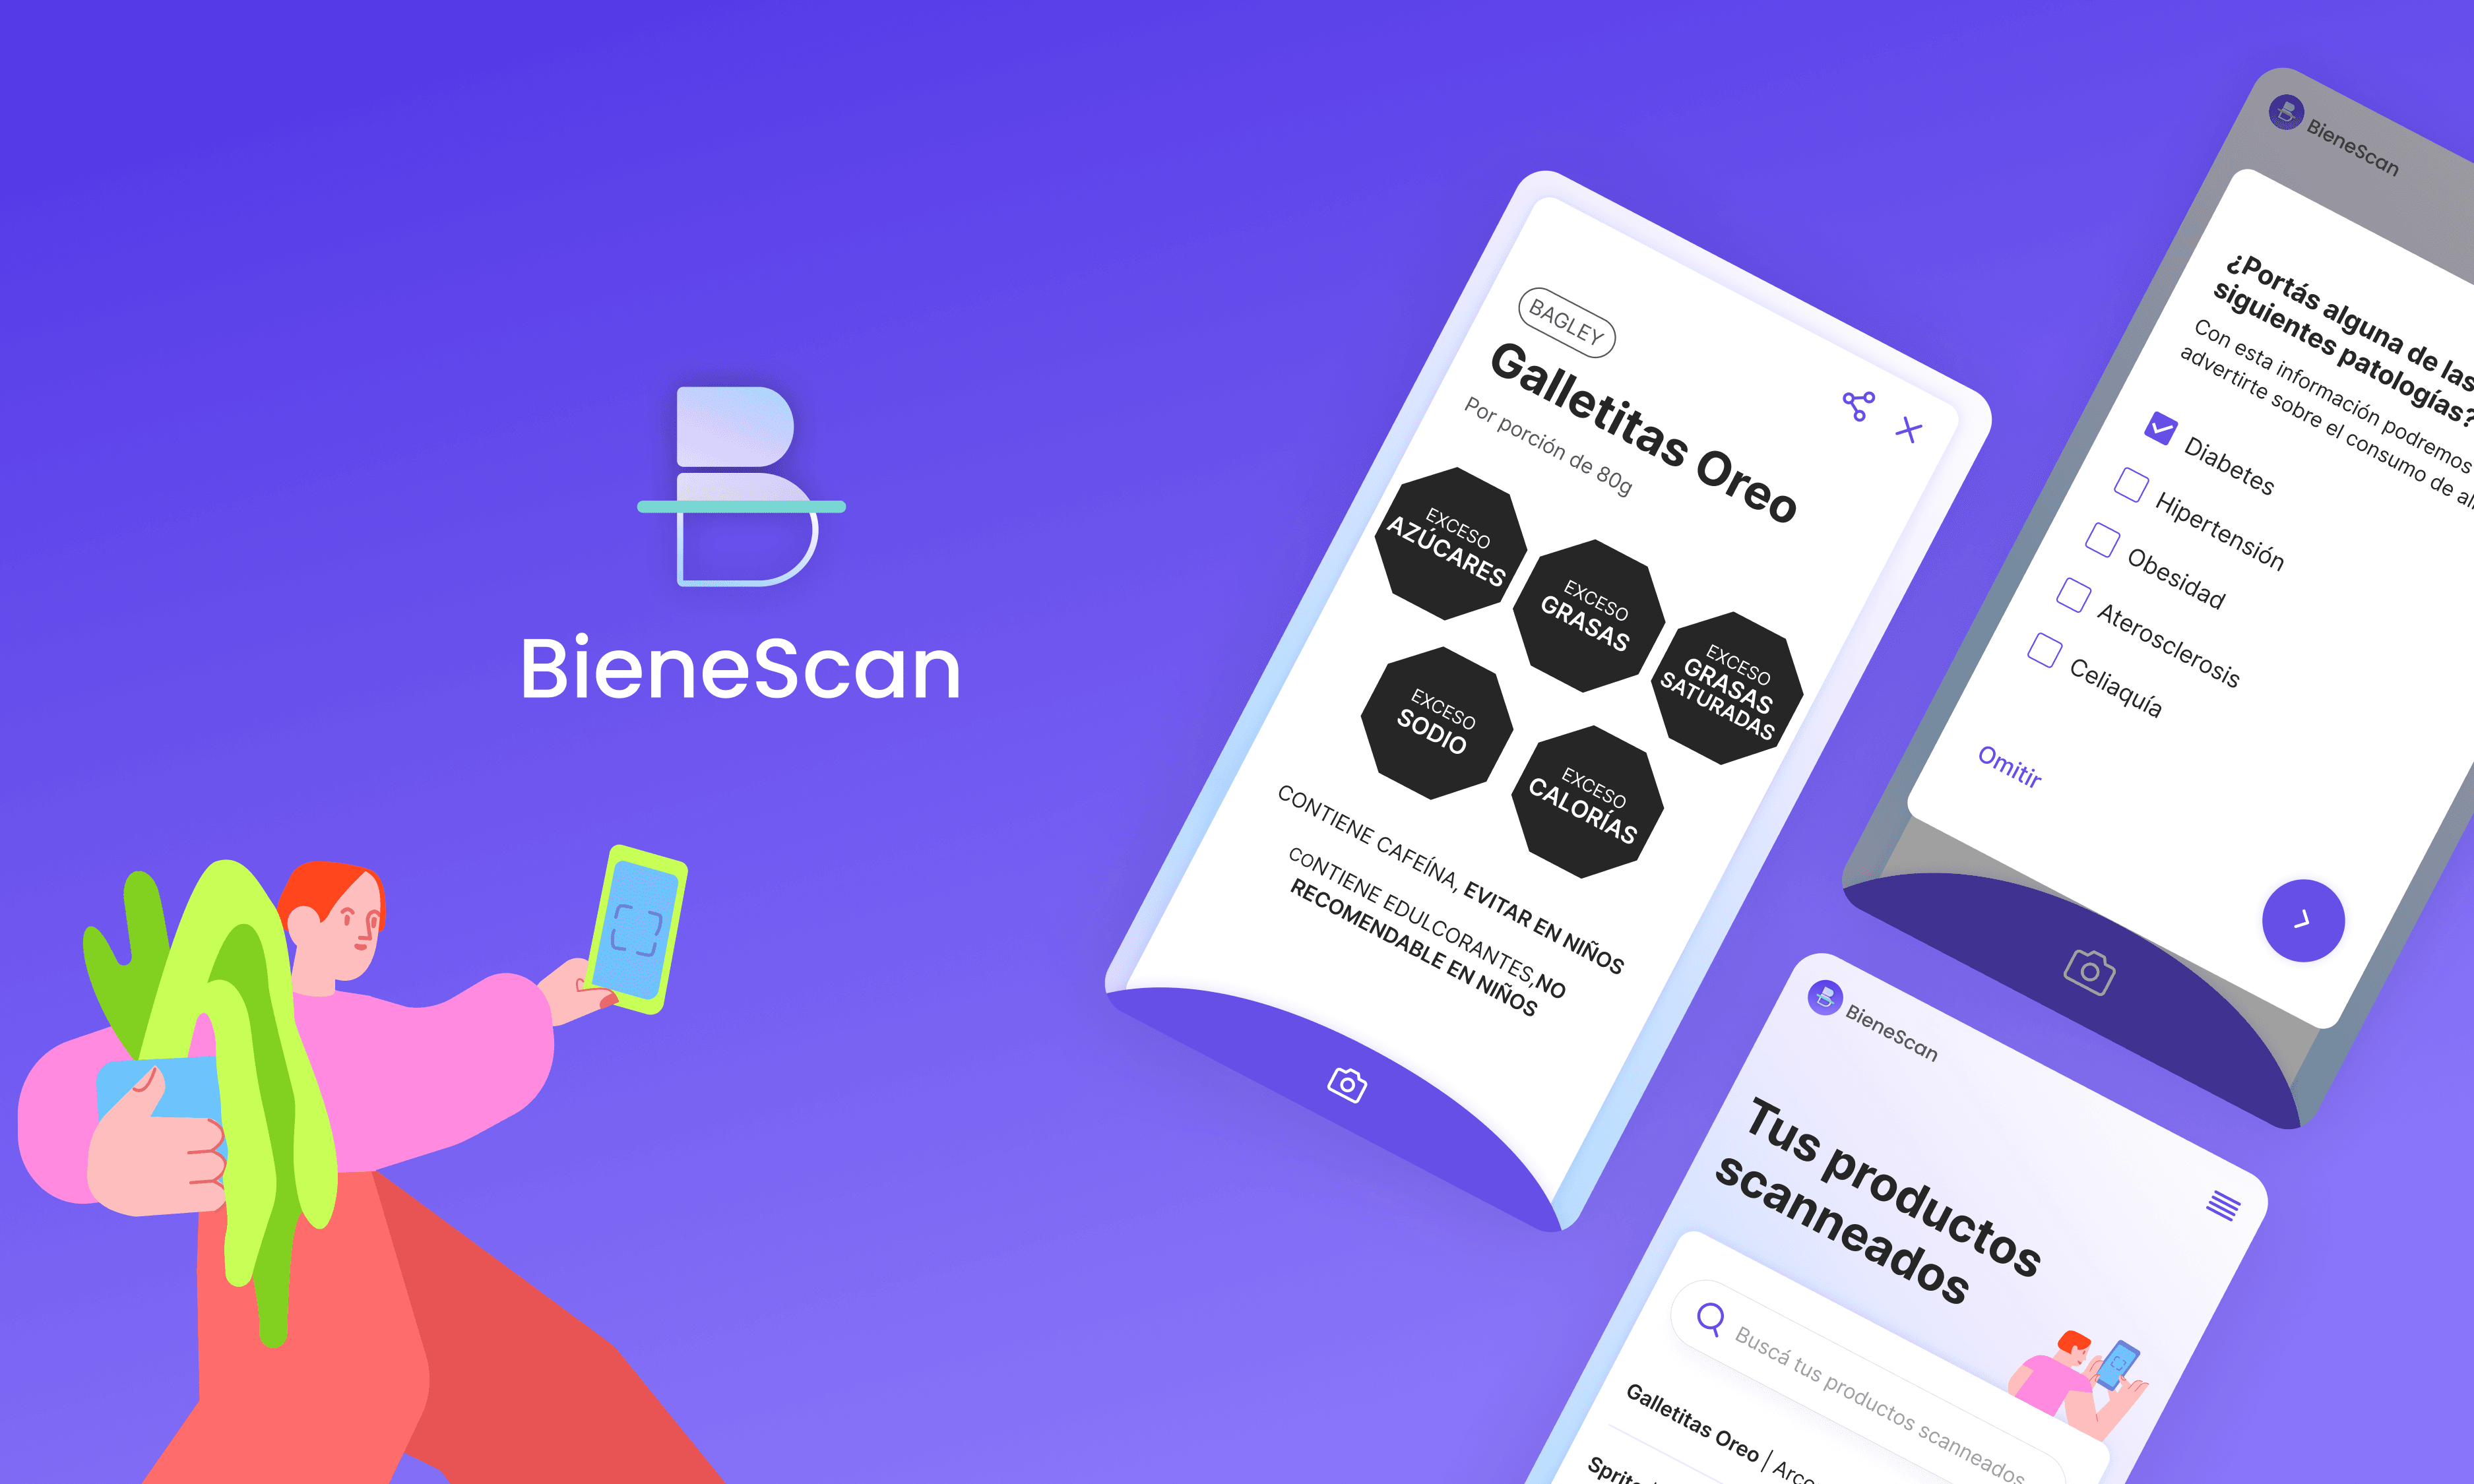 Logo de BieneScan y pantallas de celular que muestran la UI del etiquetado frontal, registro de patologías como diabetes, celiaquía y registro de productos escaneados.